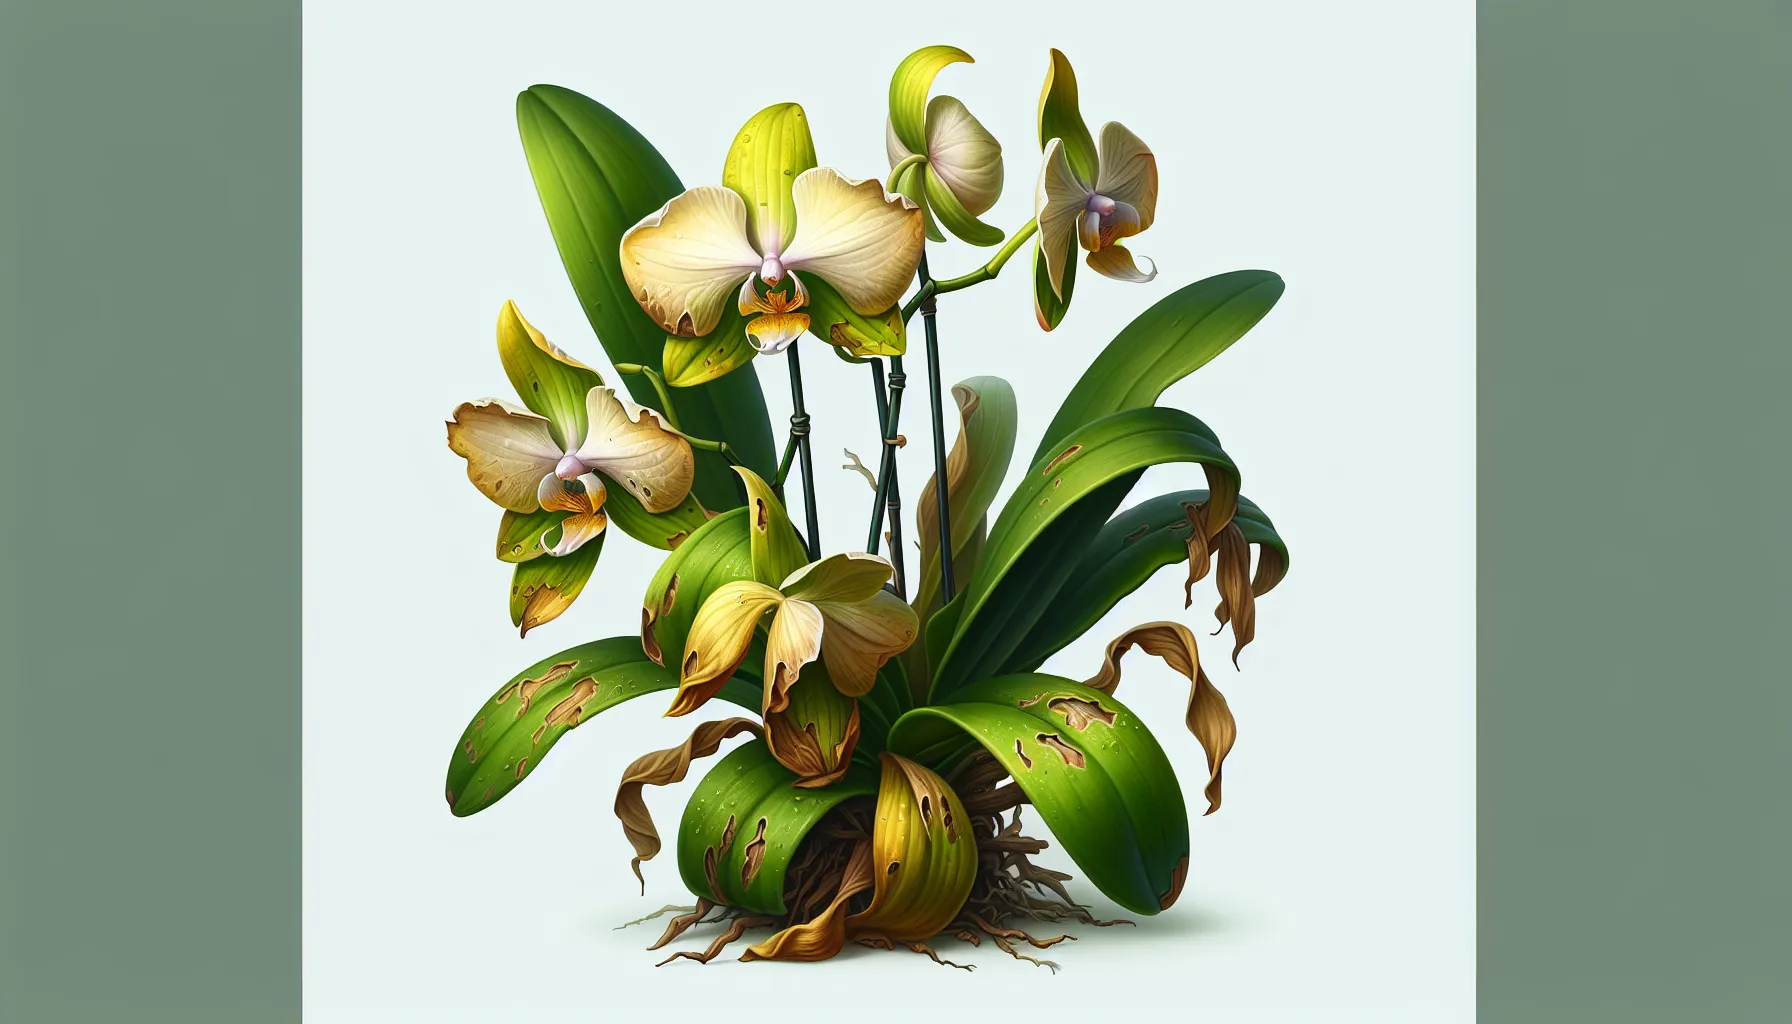 Imagen de una orquídea con hojas amarillentas y marchitas debido al riego excesivo.